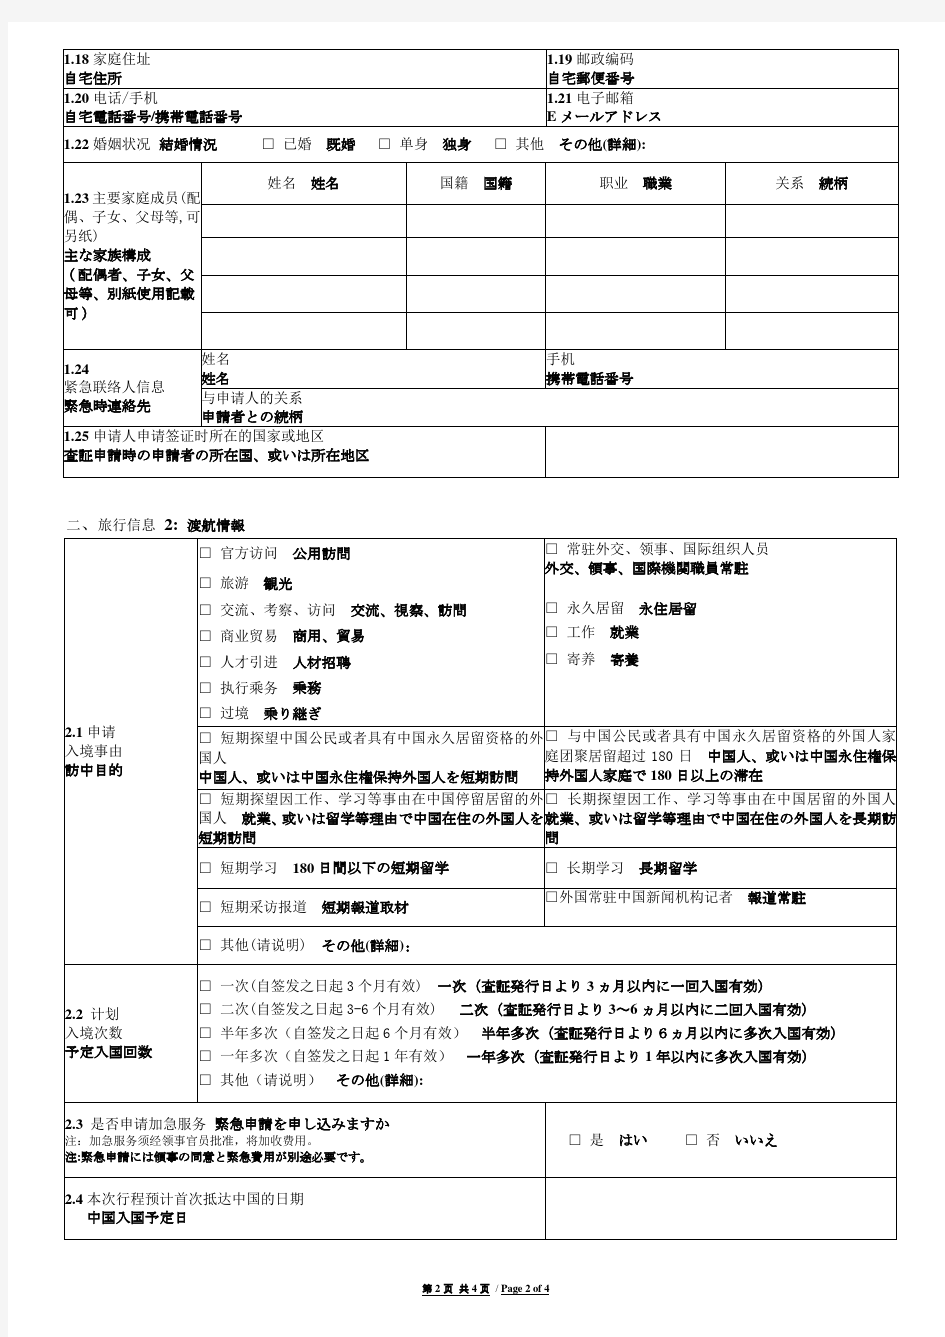 中华人民共和国签证申请表